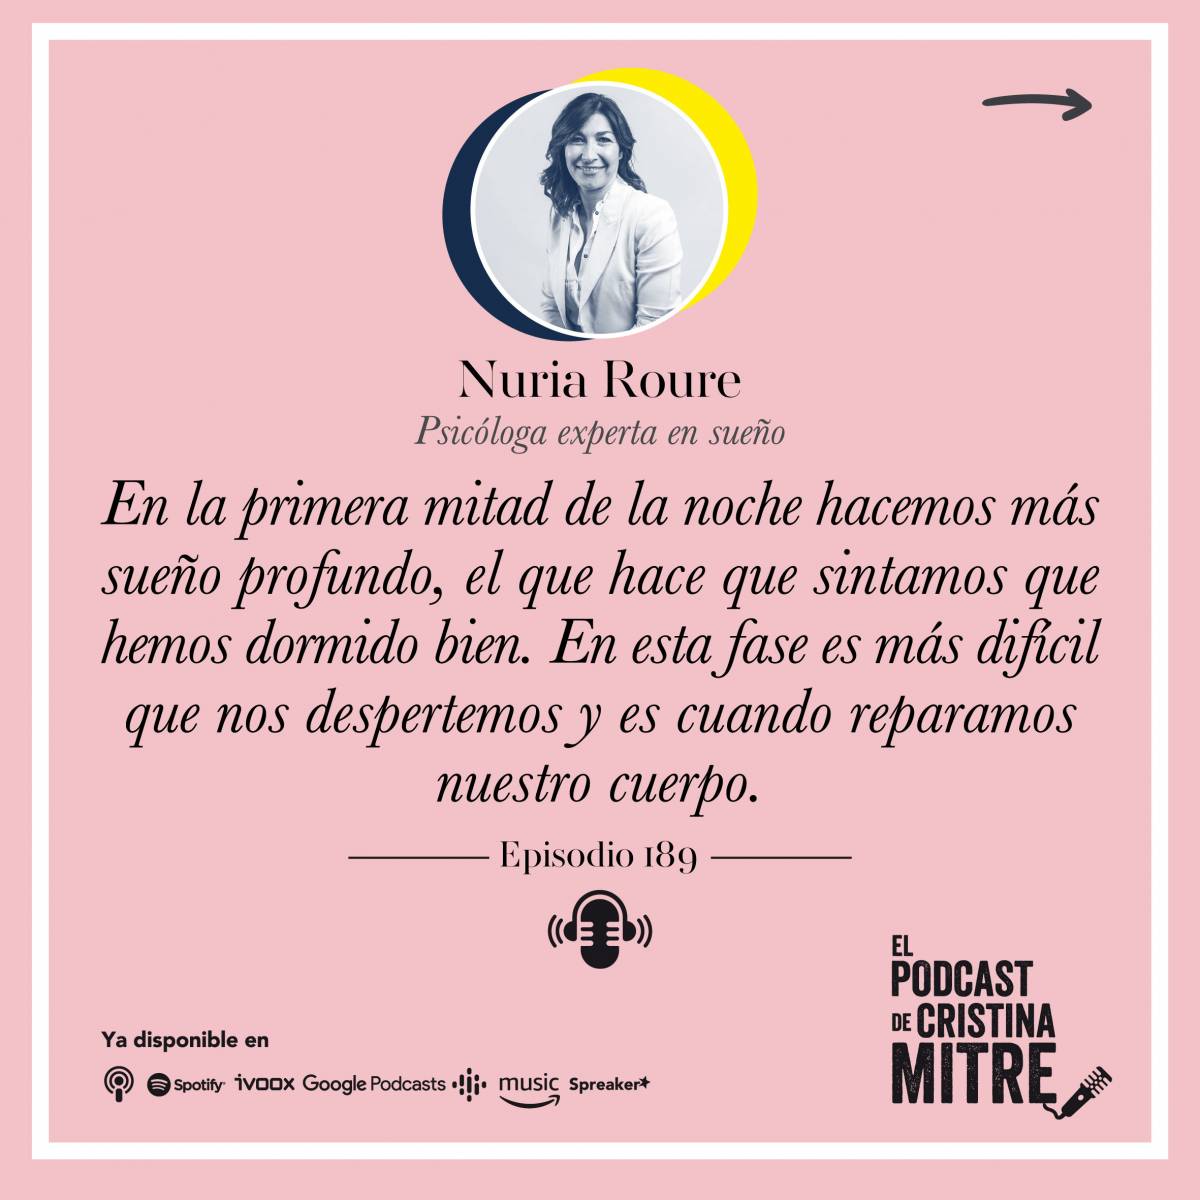 El podcast de Cristina Mitre Nuria Roure Fases del sueño